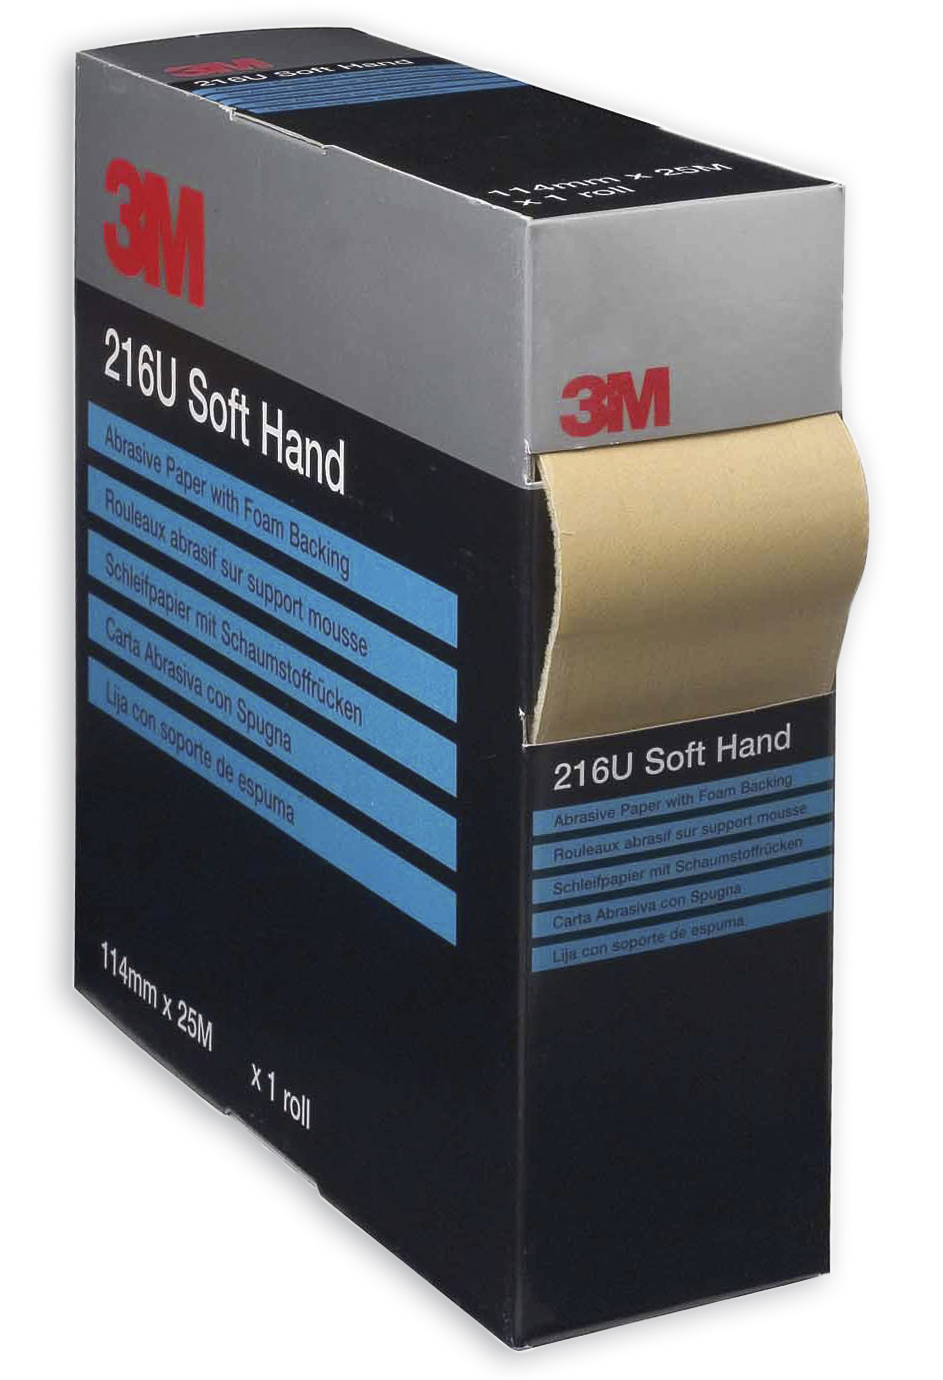 3M 216U Soft Hand Schleifrolle P 600